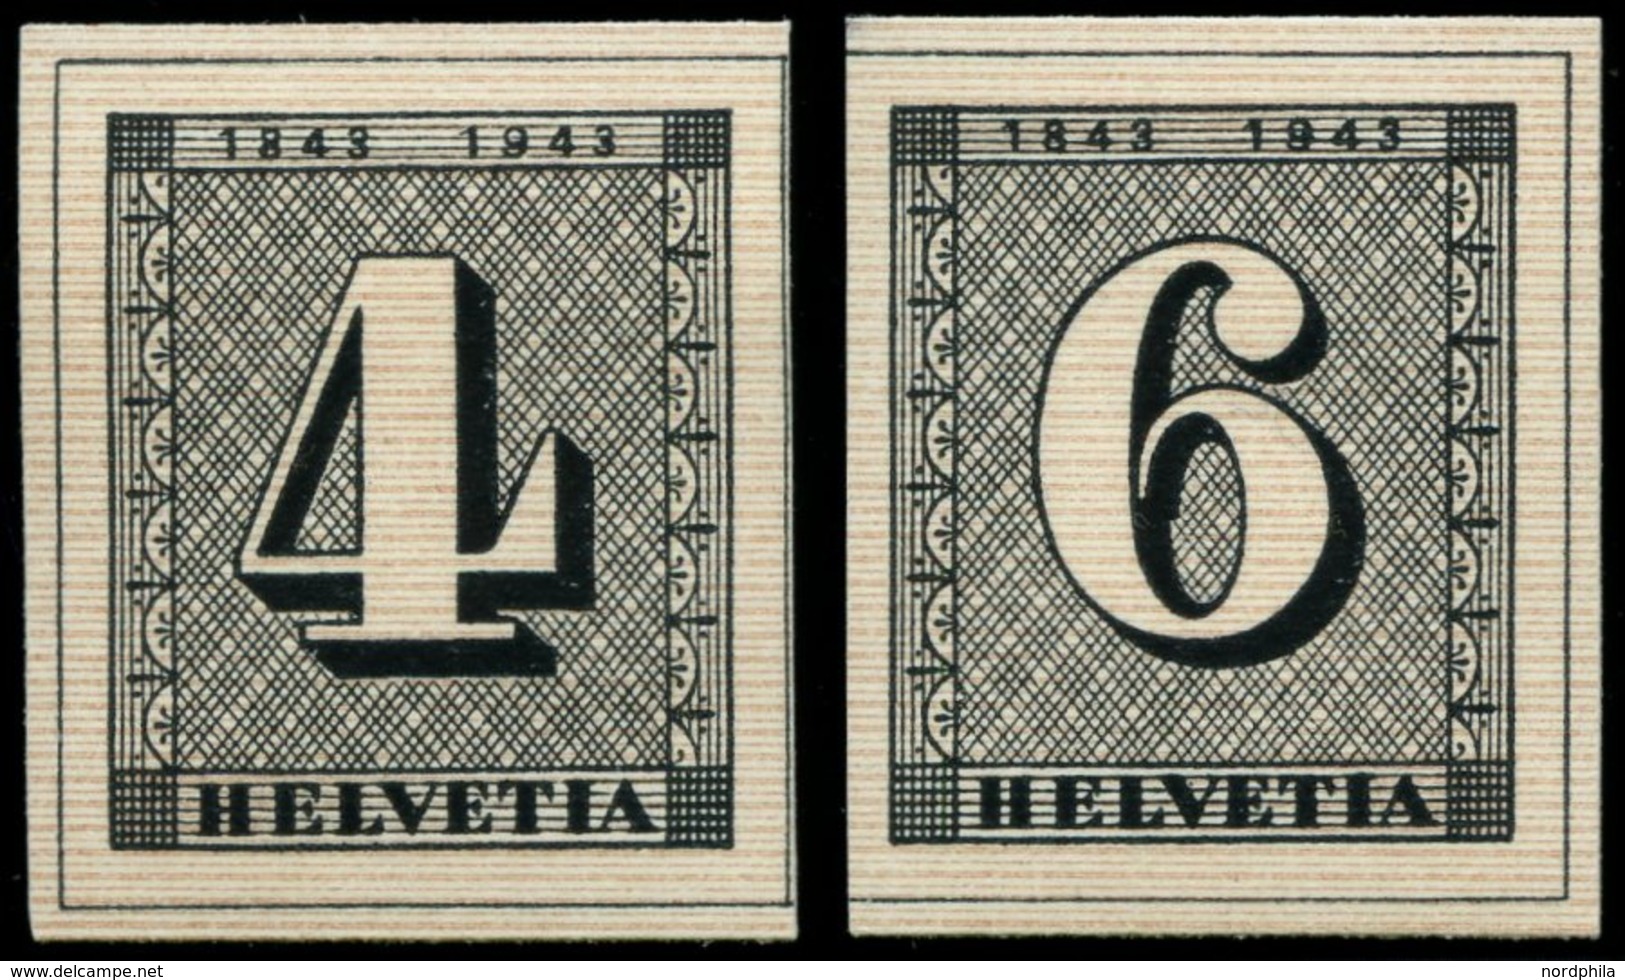 SCHWEIZ BUNDESPOST 417/8 **, 1943, Einzelmarken 100 Jahre Briefmarken, Pracht, Mi. 60.- - 1843-1852 Timbres Cantonaux Et  Fédéraux